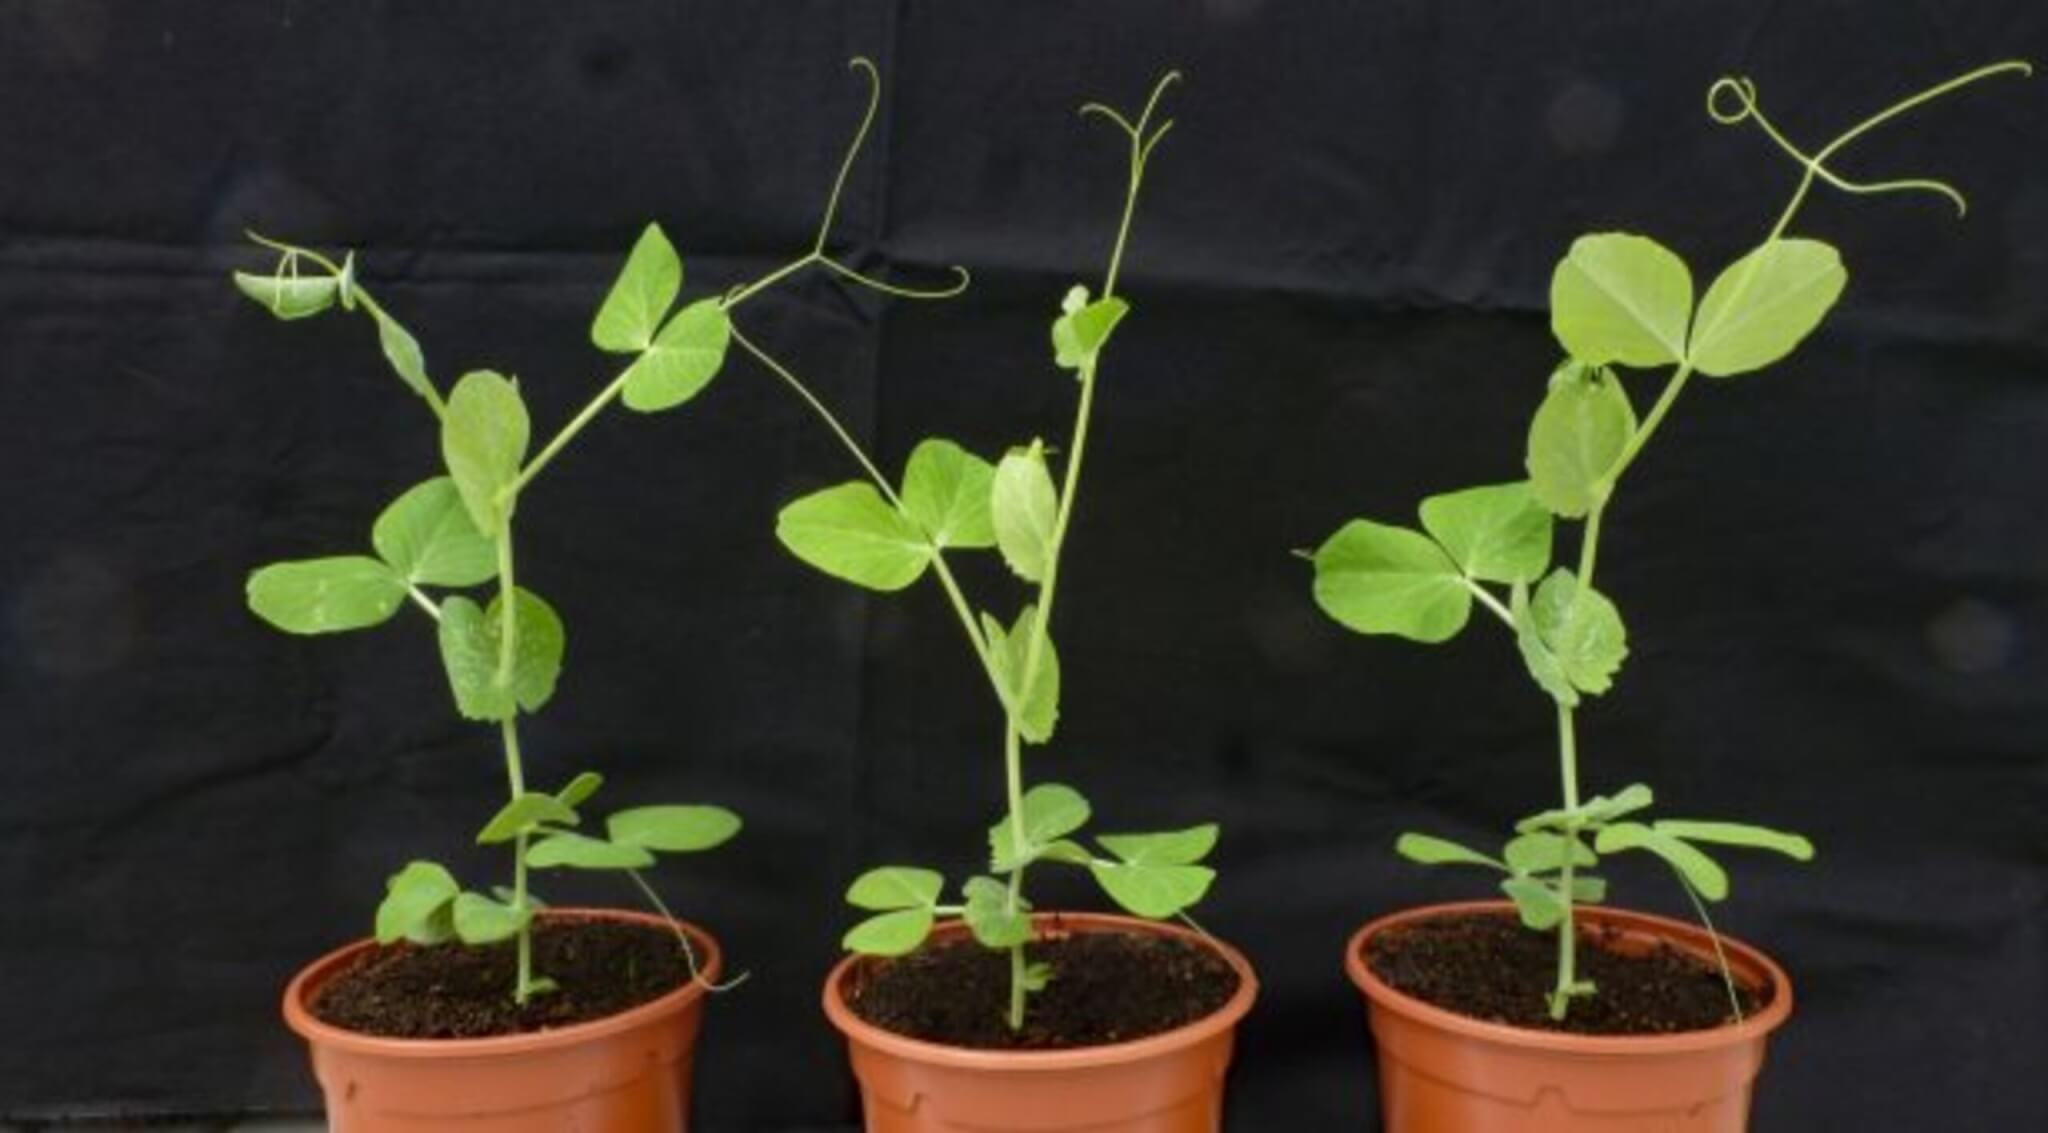 Photo of pea plants